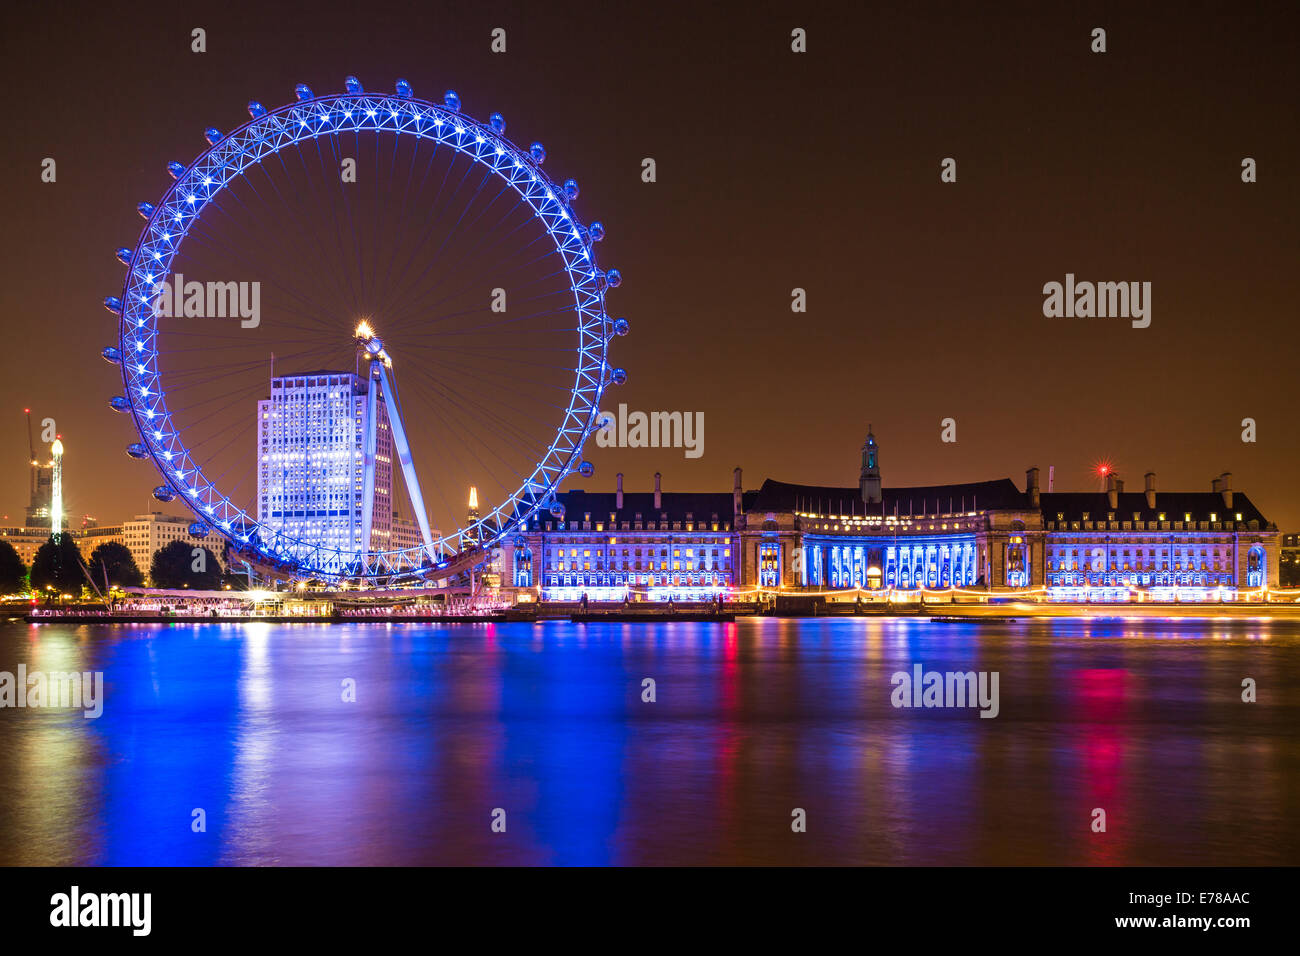 Die Shell Centre, London Eye und County Hall Gebäude in der Nacht an der Themse in London, England. Stockfoto